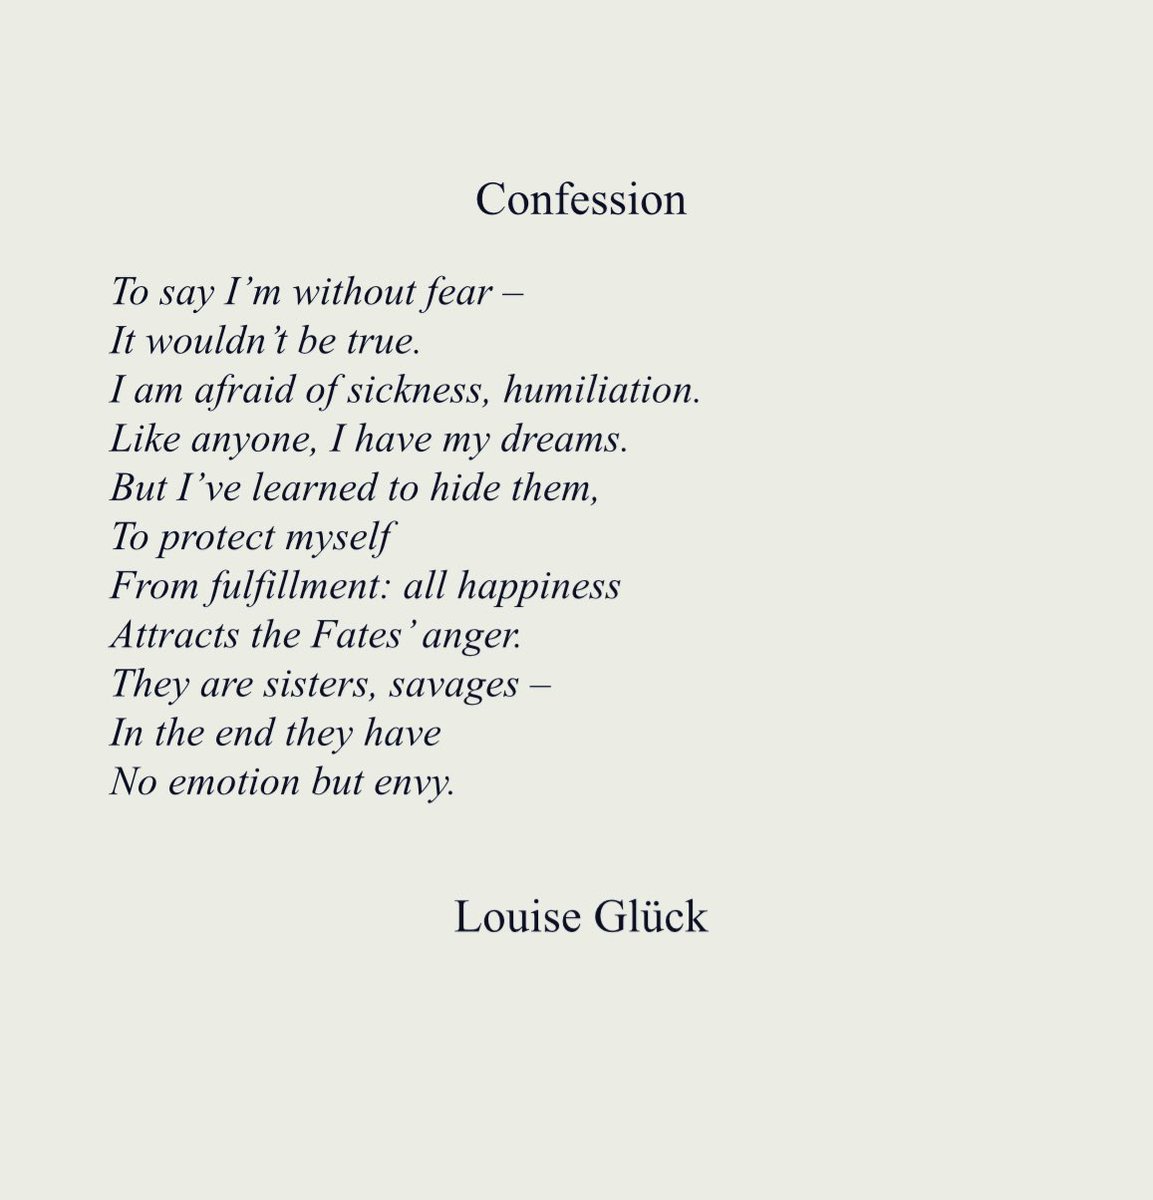 La Poesia del Lunedì. La felicità degli uomini può scatenare l’ira degli Dei gelosi. Lo sussurra Louise Gluck, Premio Nobel per la Letteratura , in questi eleganti versi: Confession.